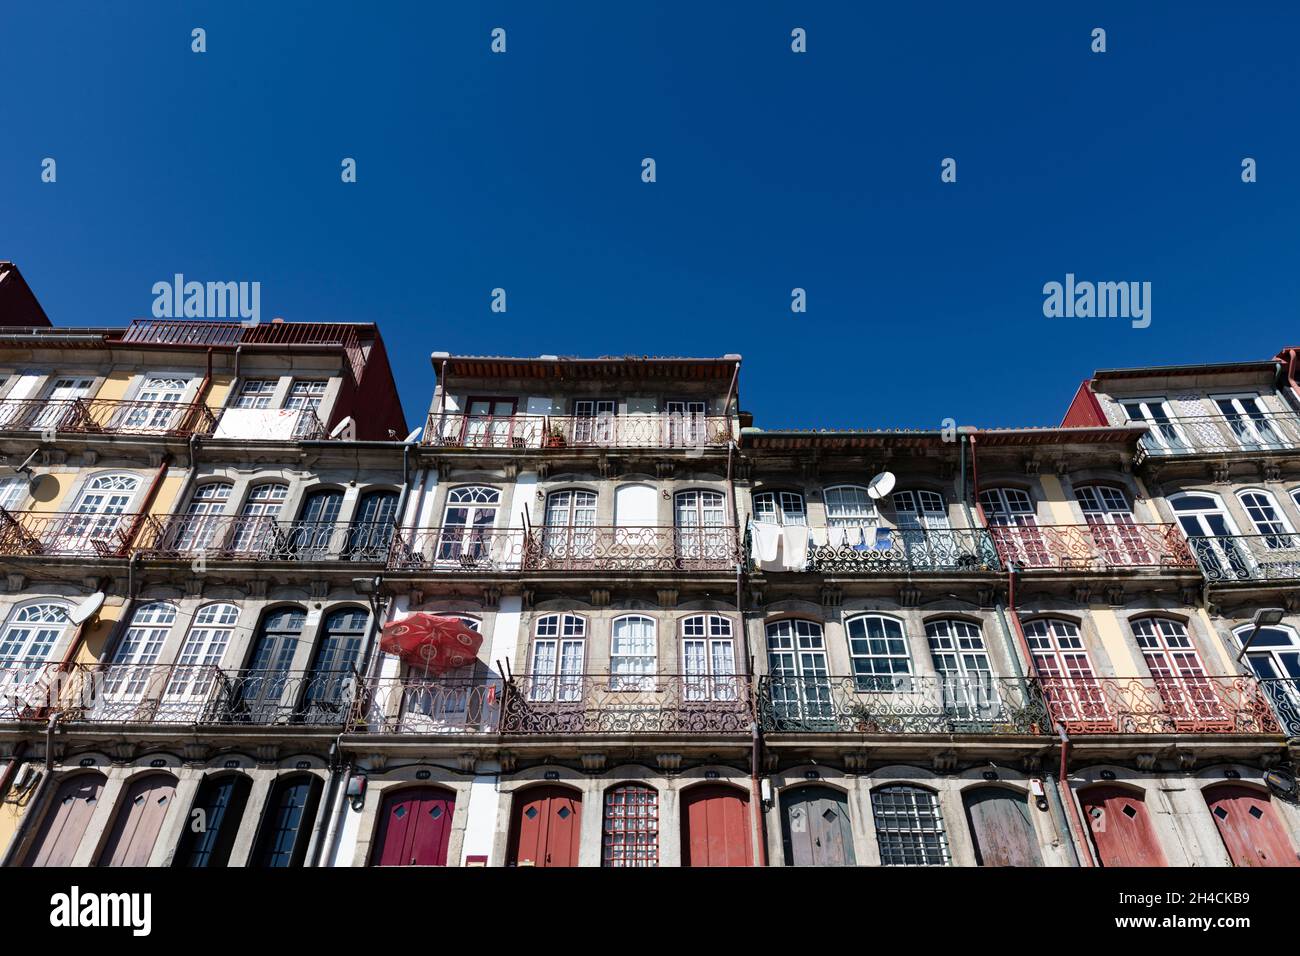 Häuserfronten entlang der Cais da Ribeira in Portugal. Altbaufront mit schönen Balkonen und bunten Sonnenschirmen. Stock Photo